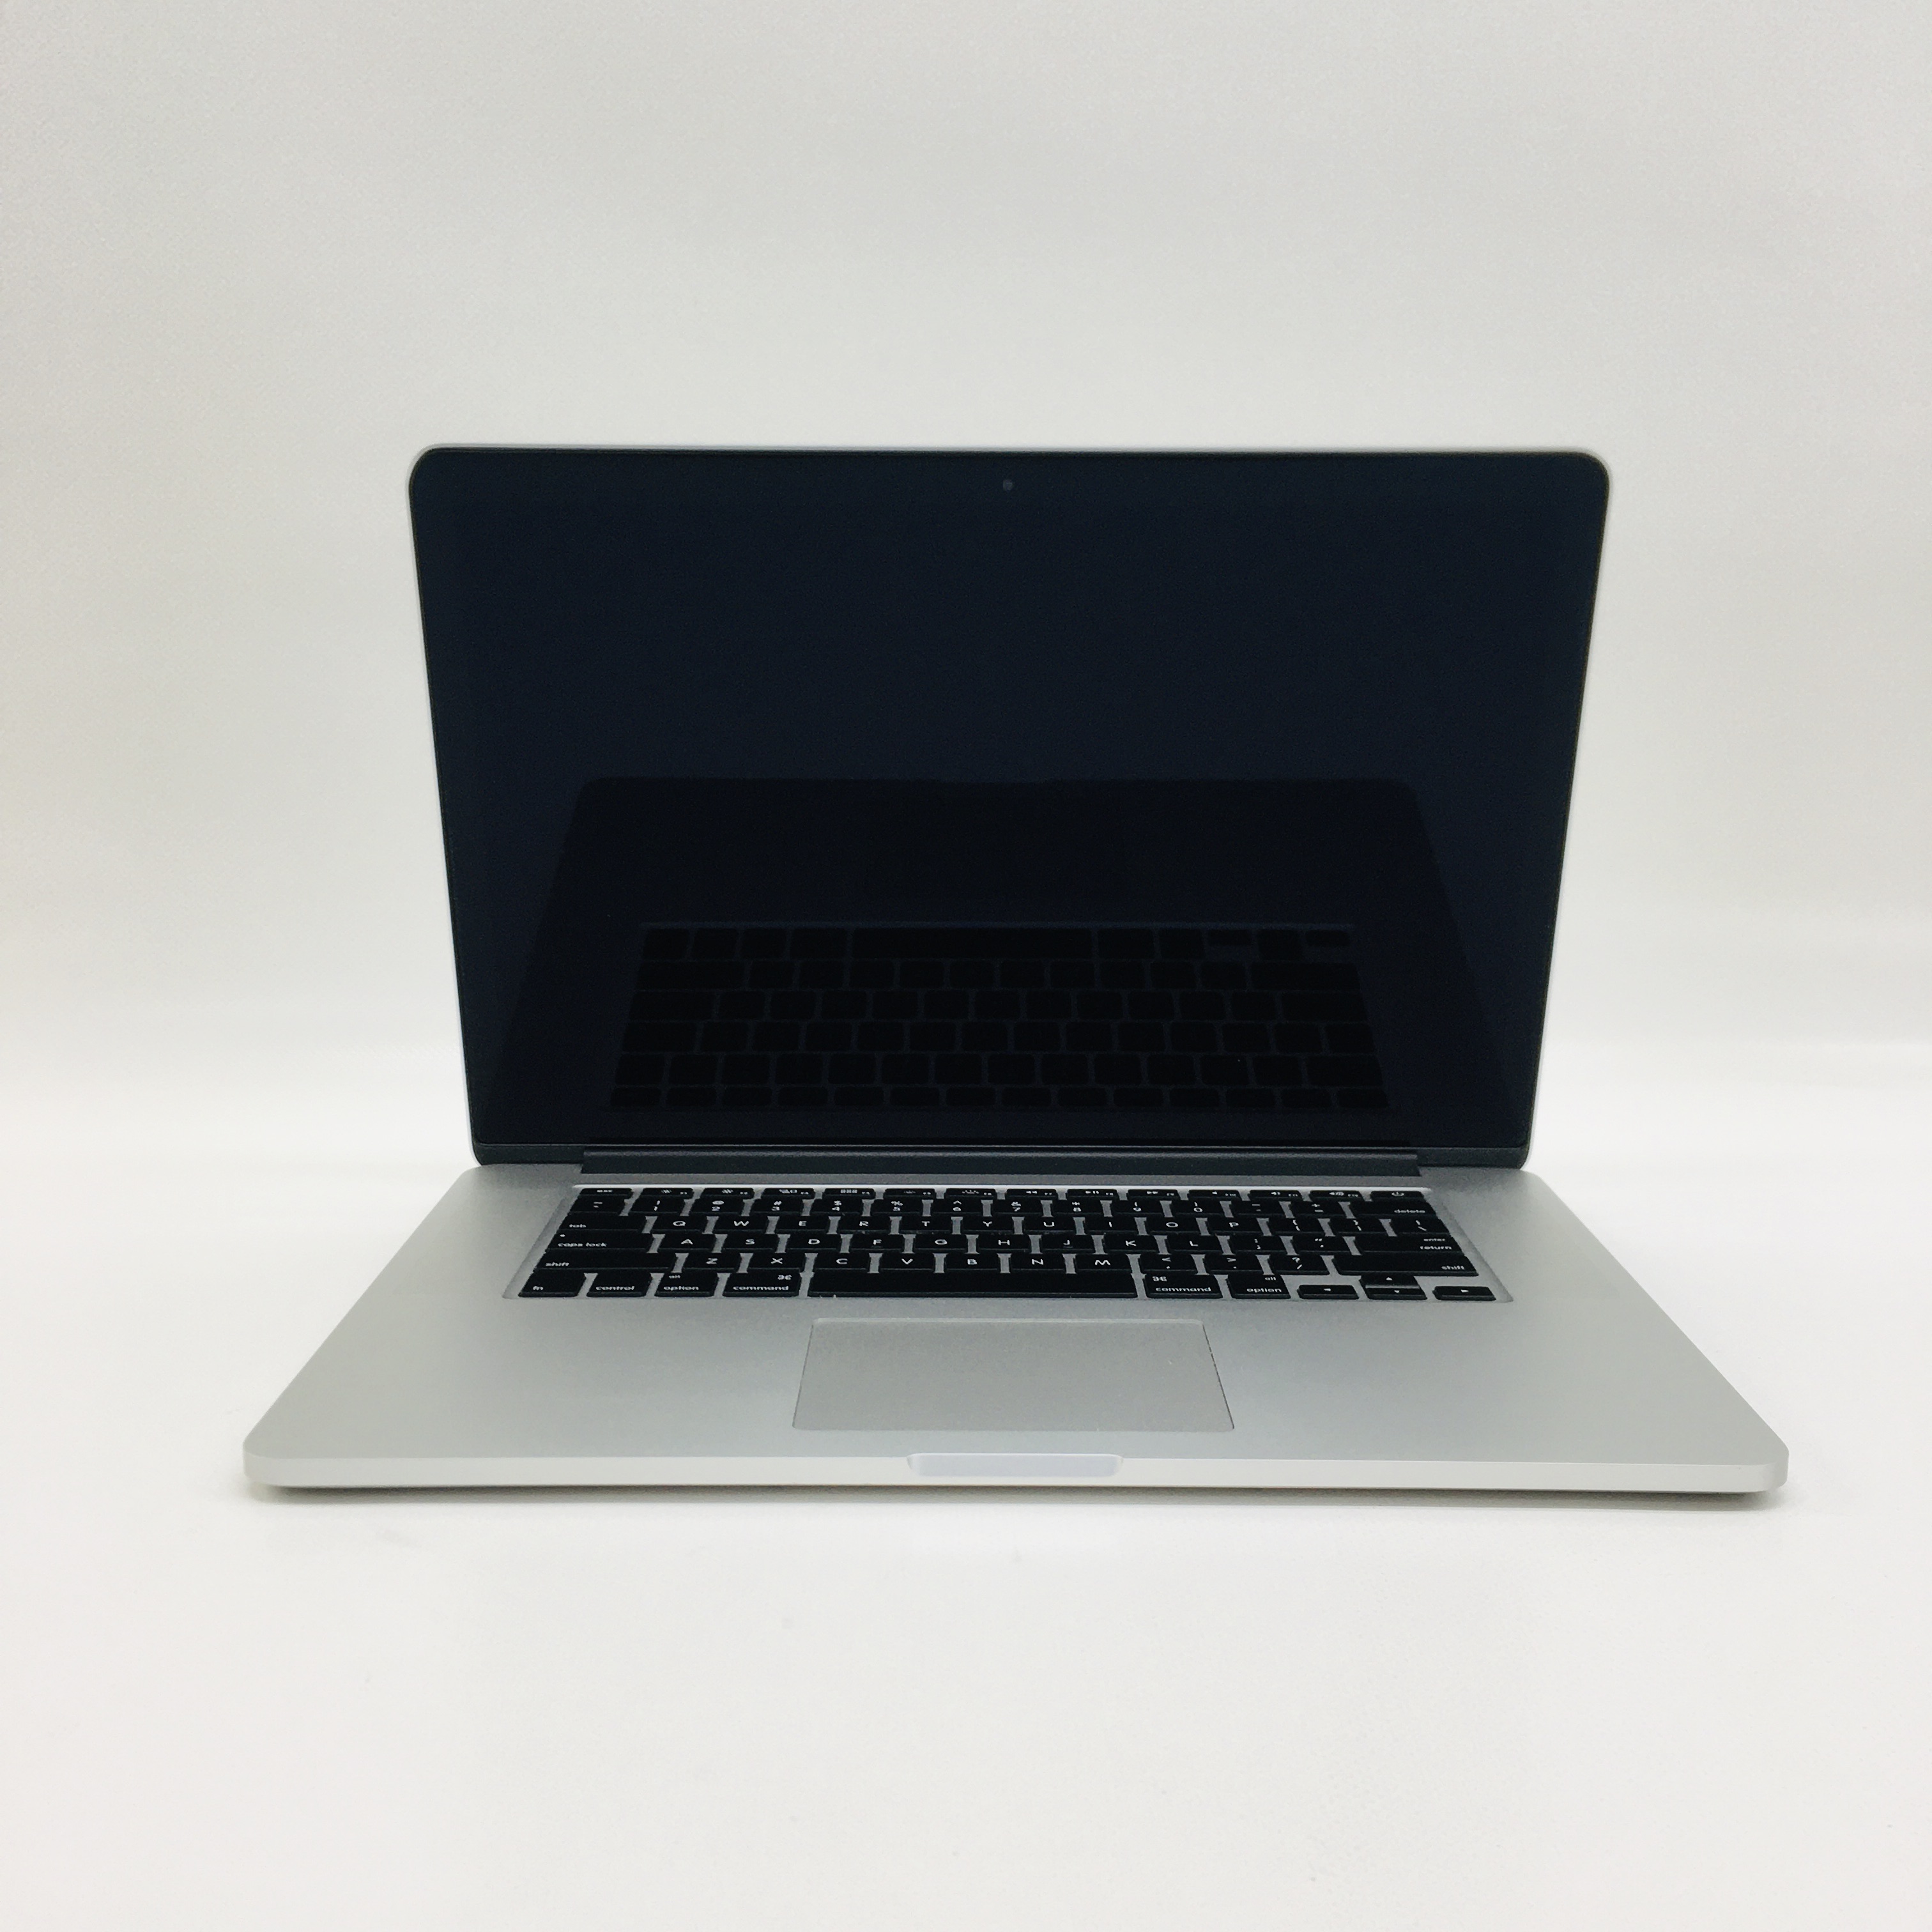 MacBook Pro Retina 15" Mid 2015 (Intel Quad-Core i7 2.5 GHz 16 GB RAM 1 TB SSD), Intel Quad-Core i7 2.5 GHz, 16 GB RAM, 1 TB SSD, image 1